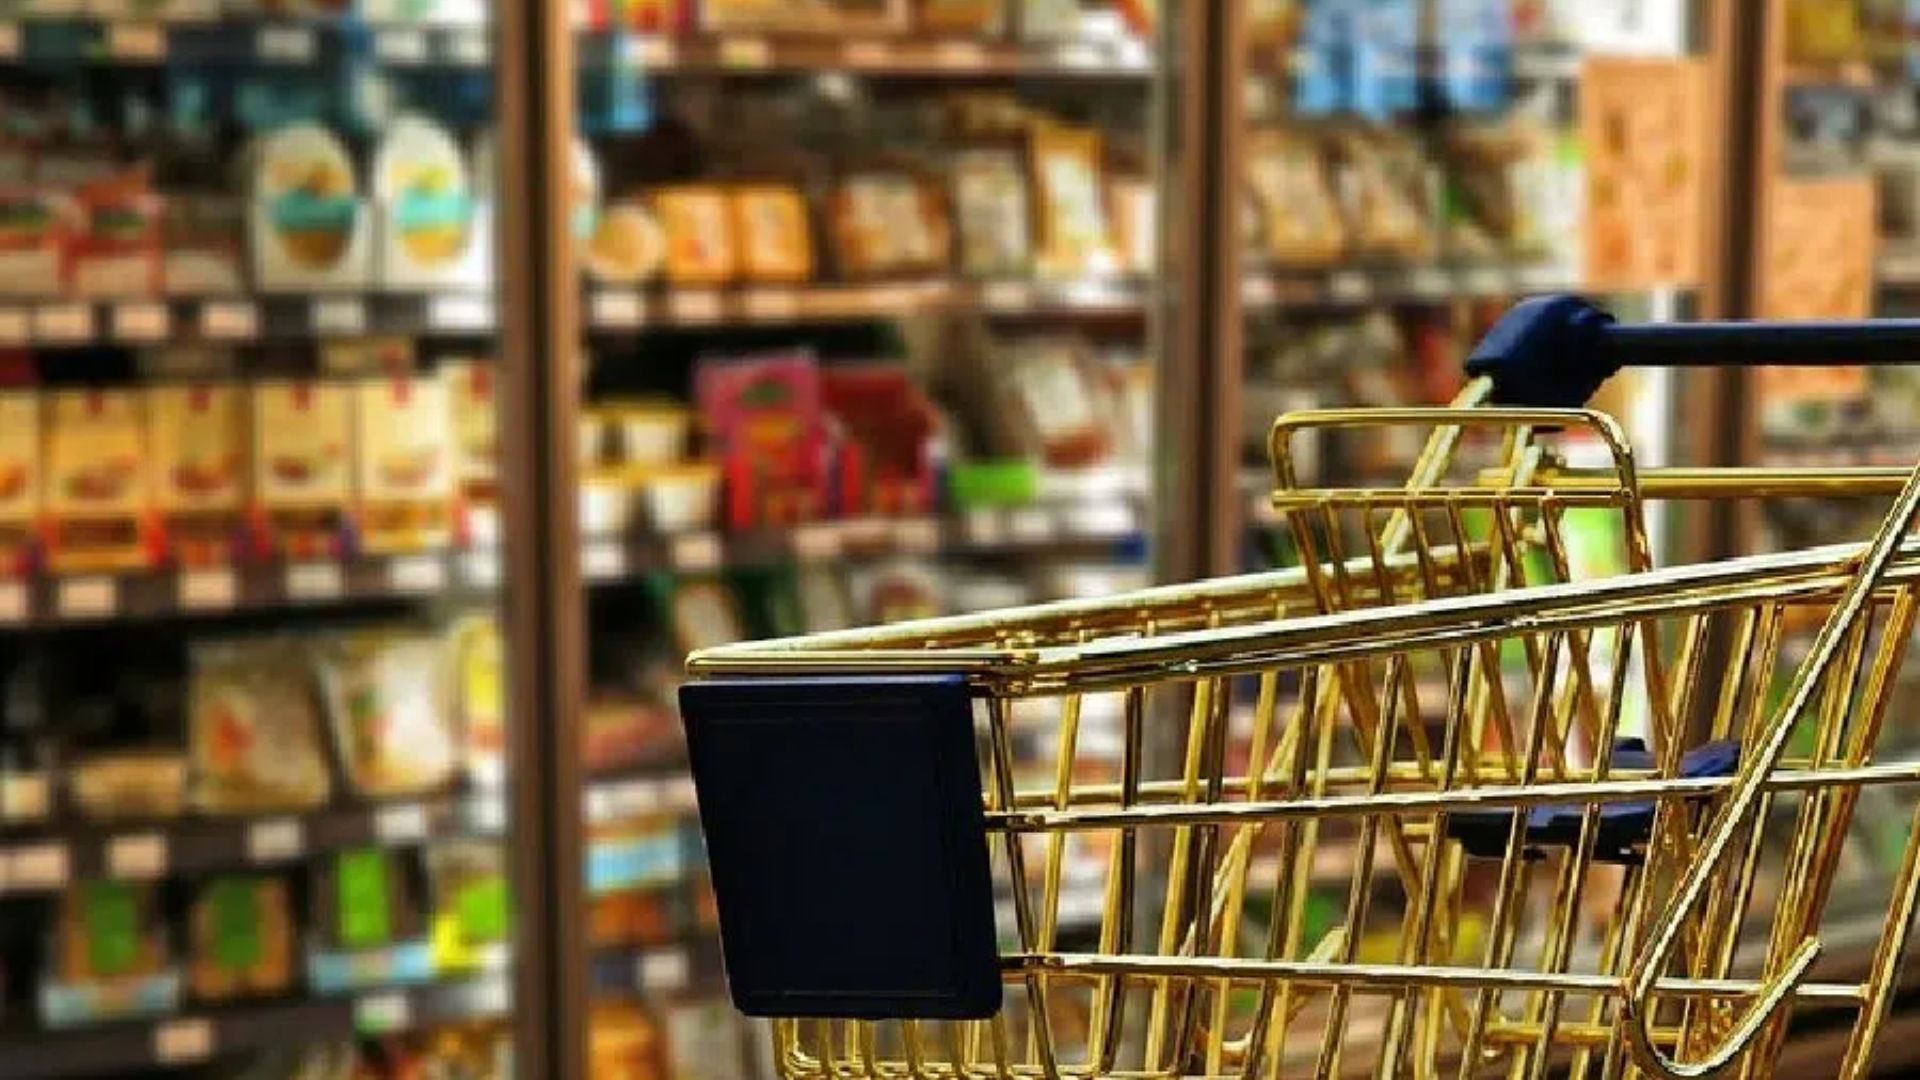 Tendencias que transformarán los supermercados del futuro